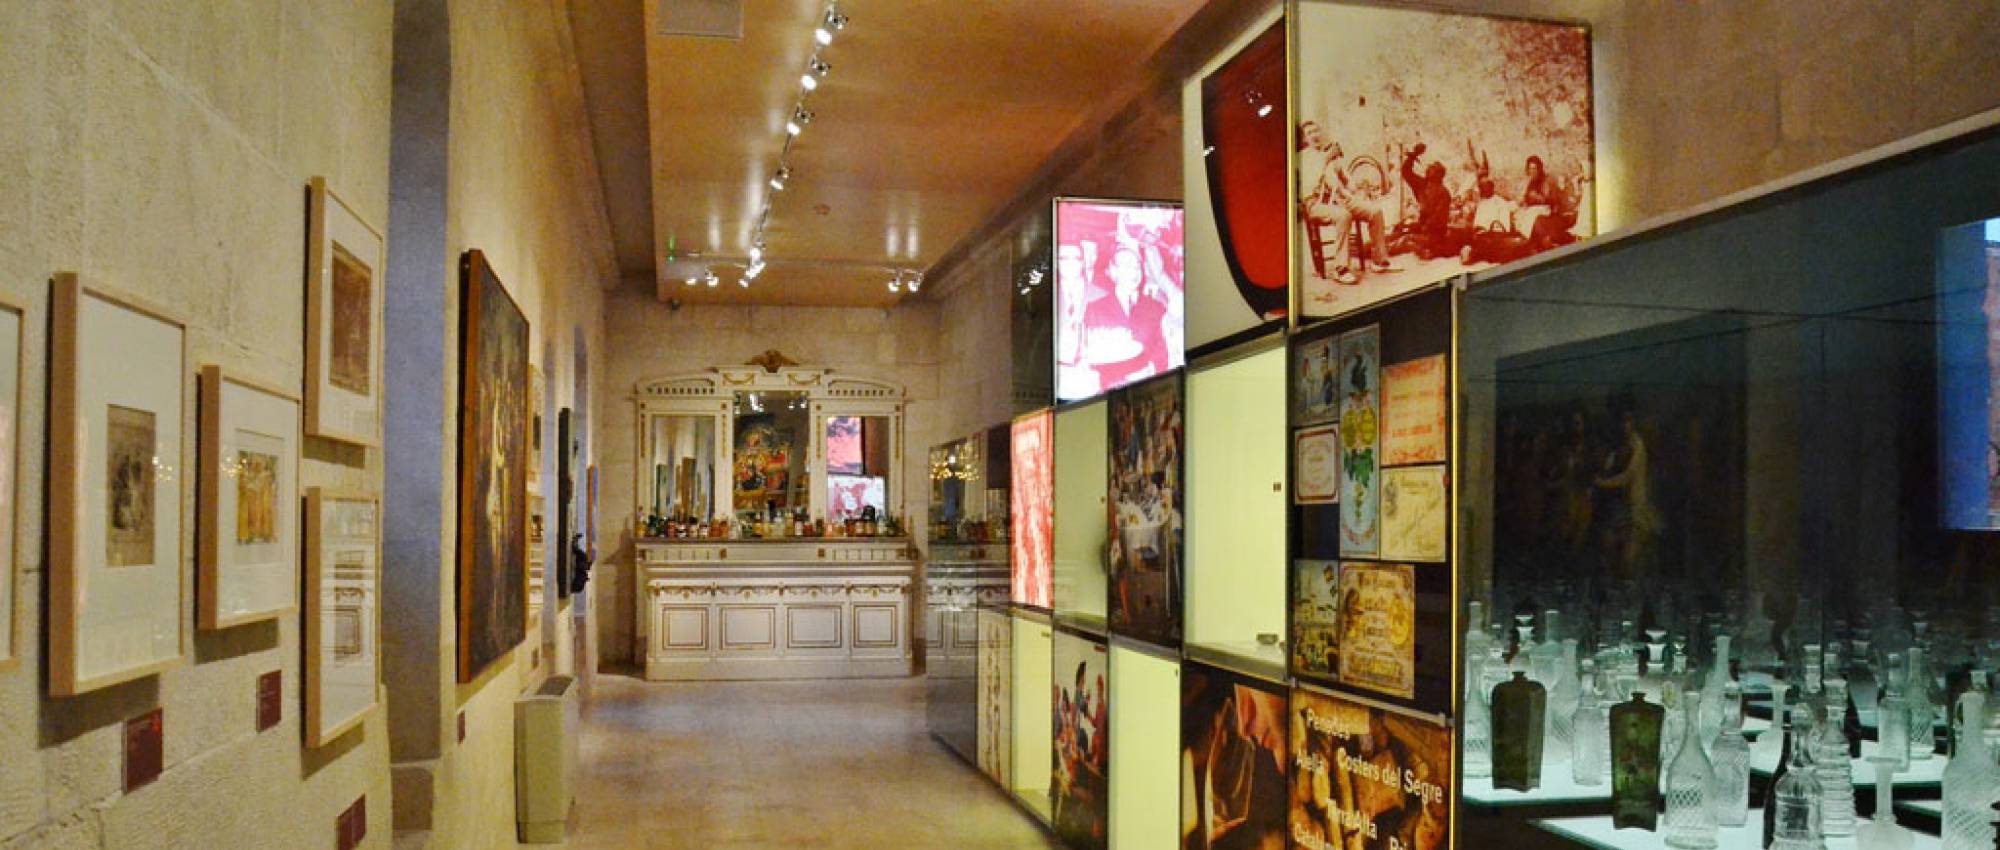 Visita al Vinseum, el Museu de les Cultures del Vi de Catalunya